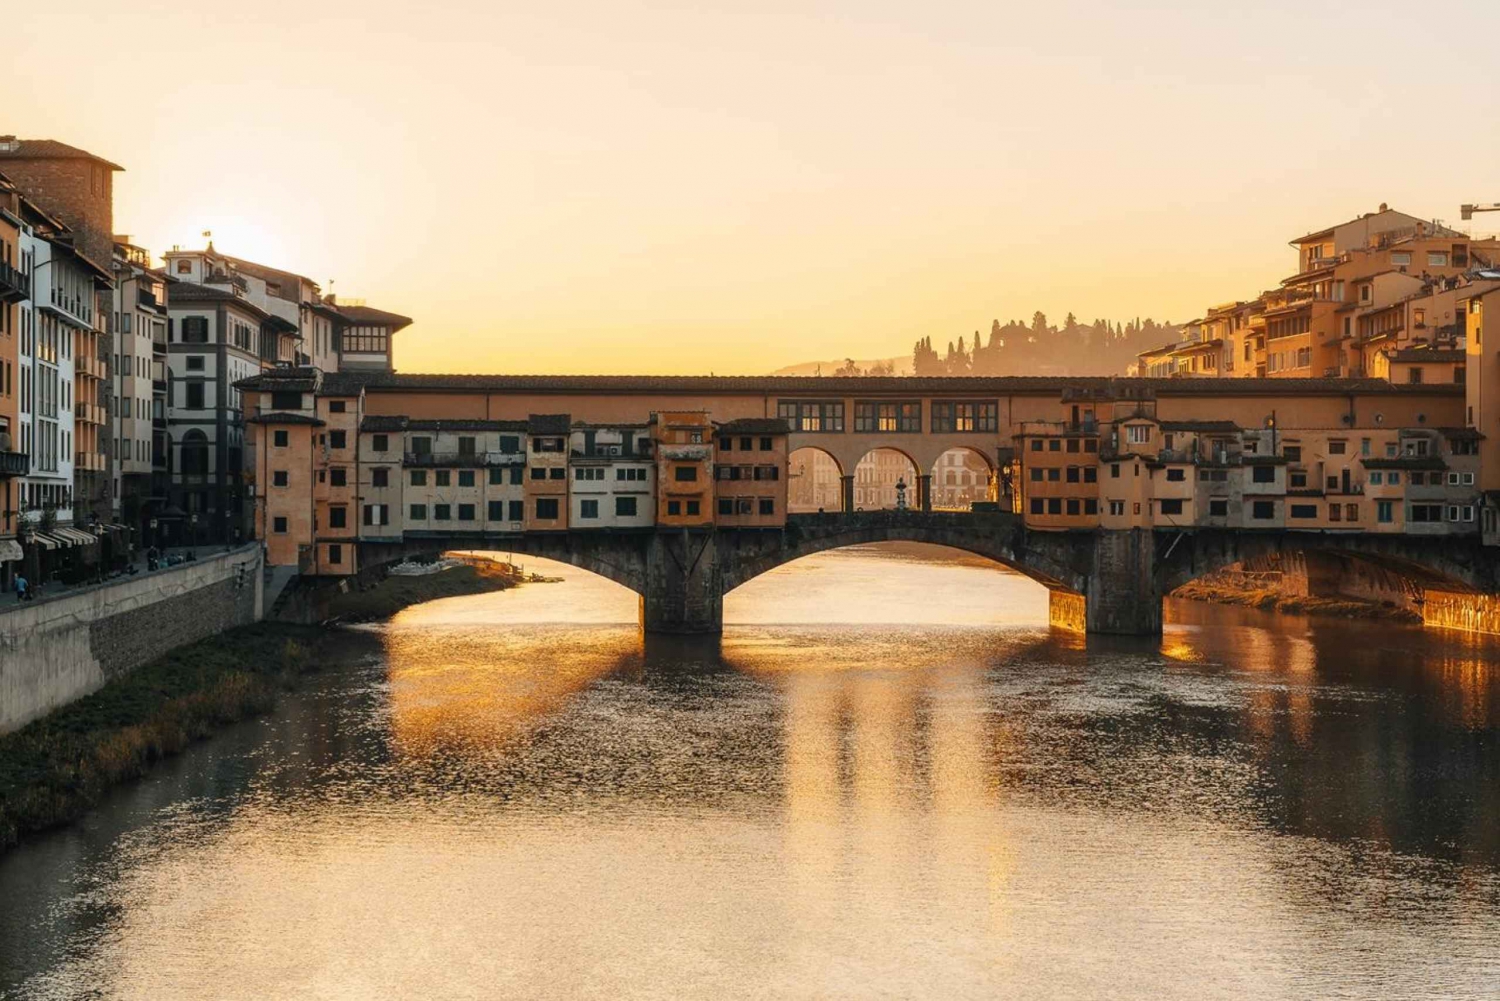 Firenze: Vandretur i renæssancens historie